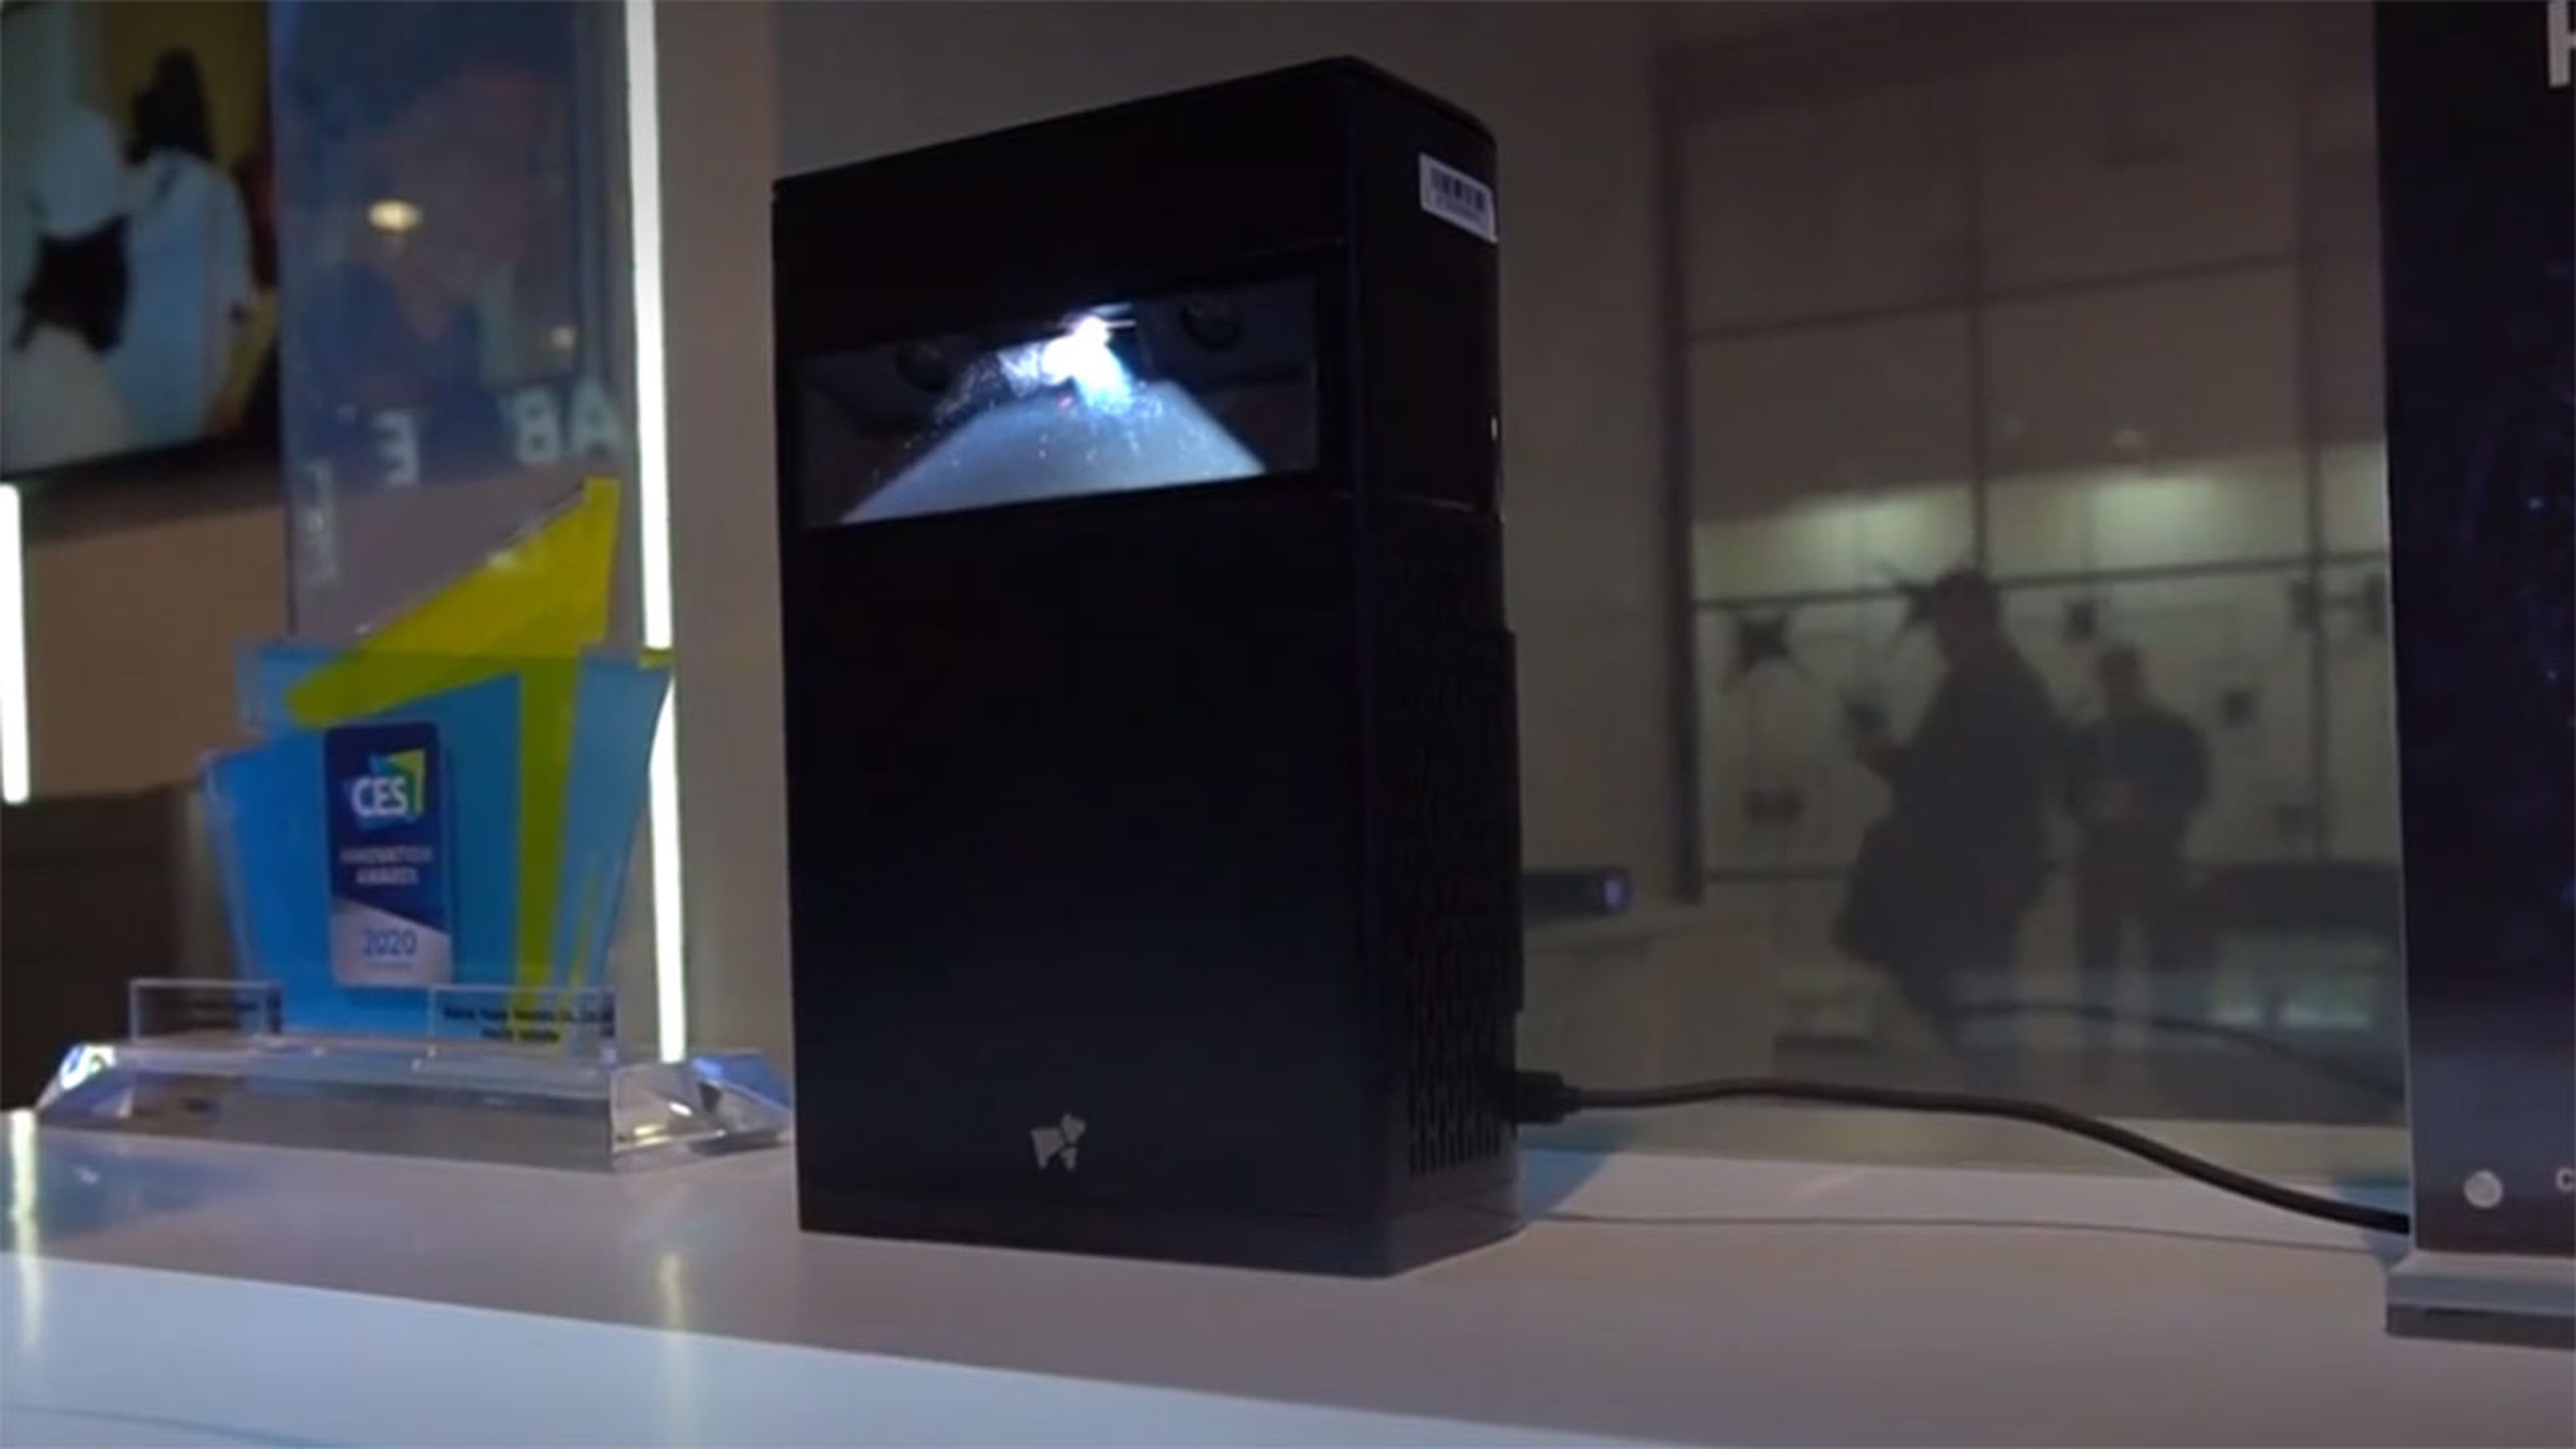 Estos proyectores inteligentes convierten casi cualquier superficie en pantalla | Computer Hoy